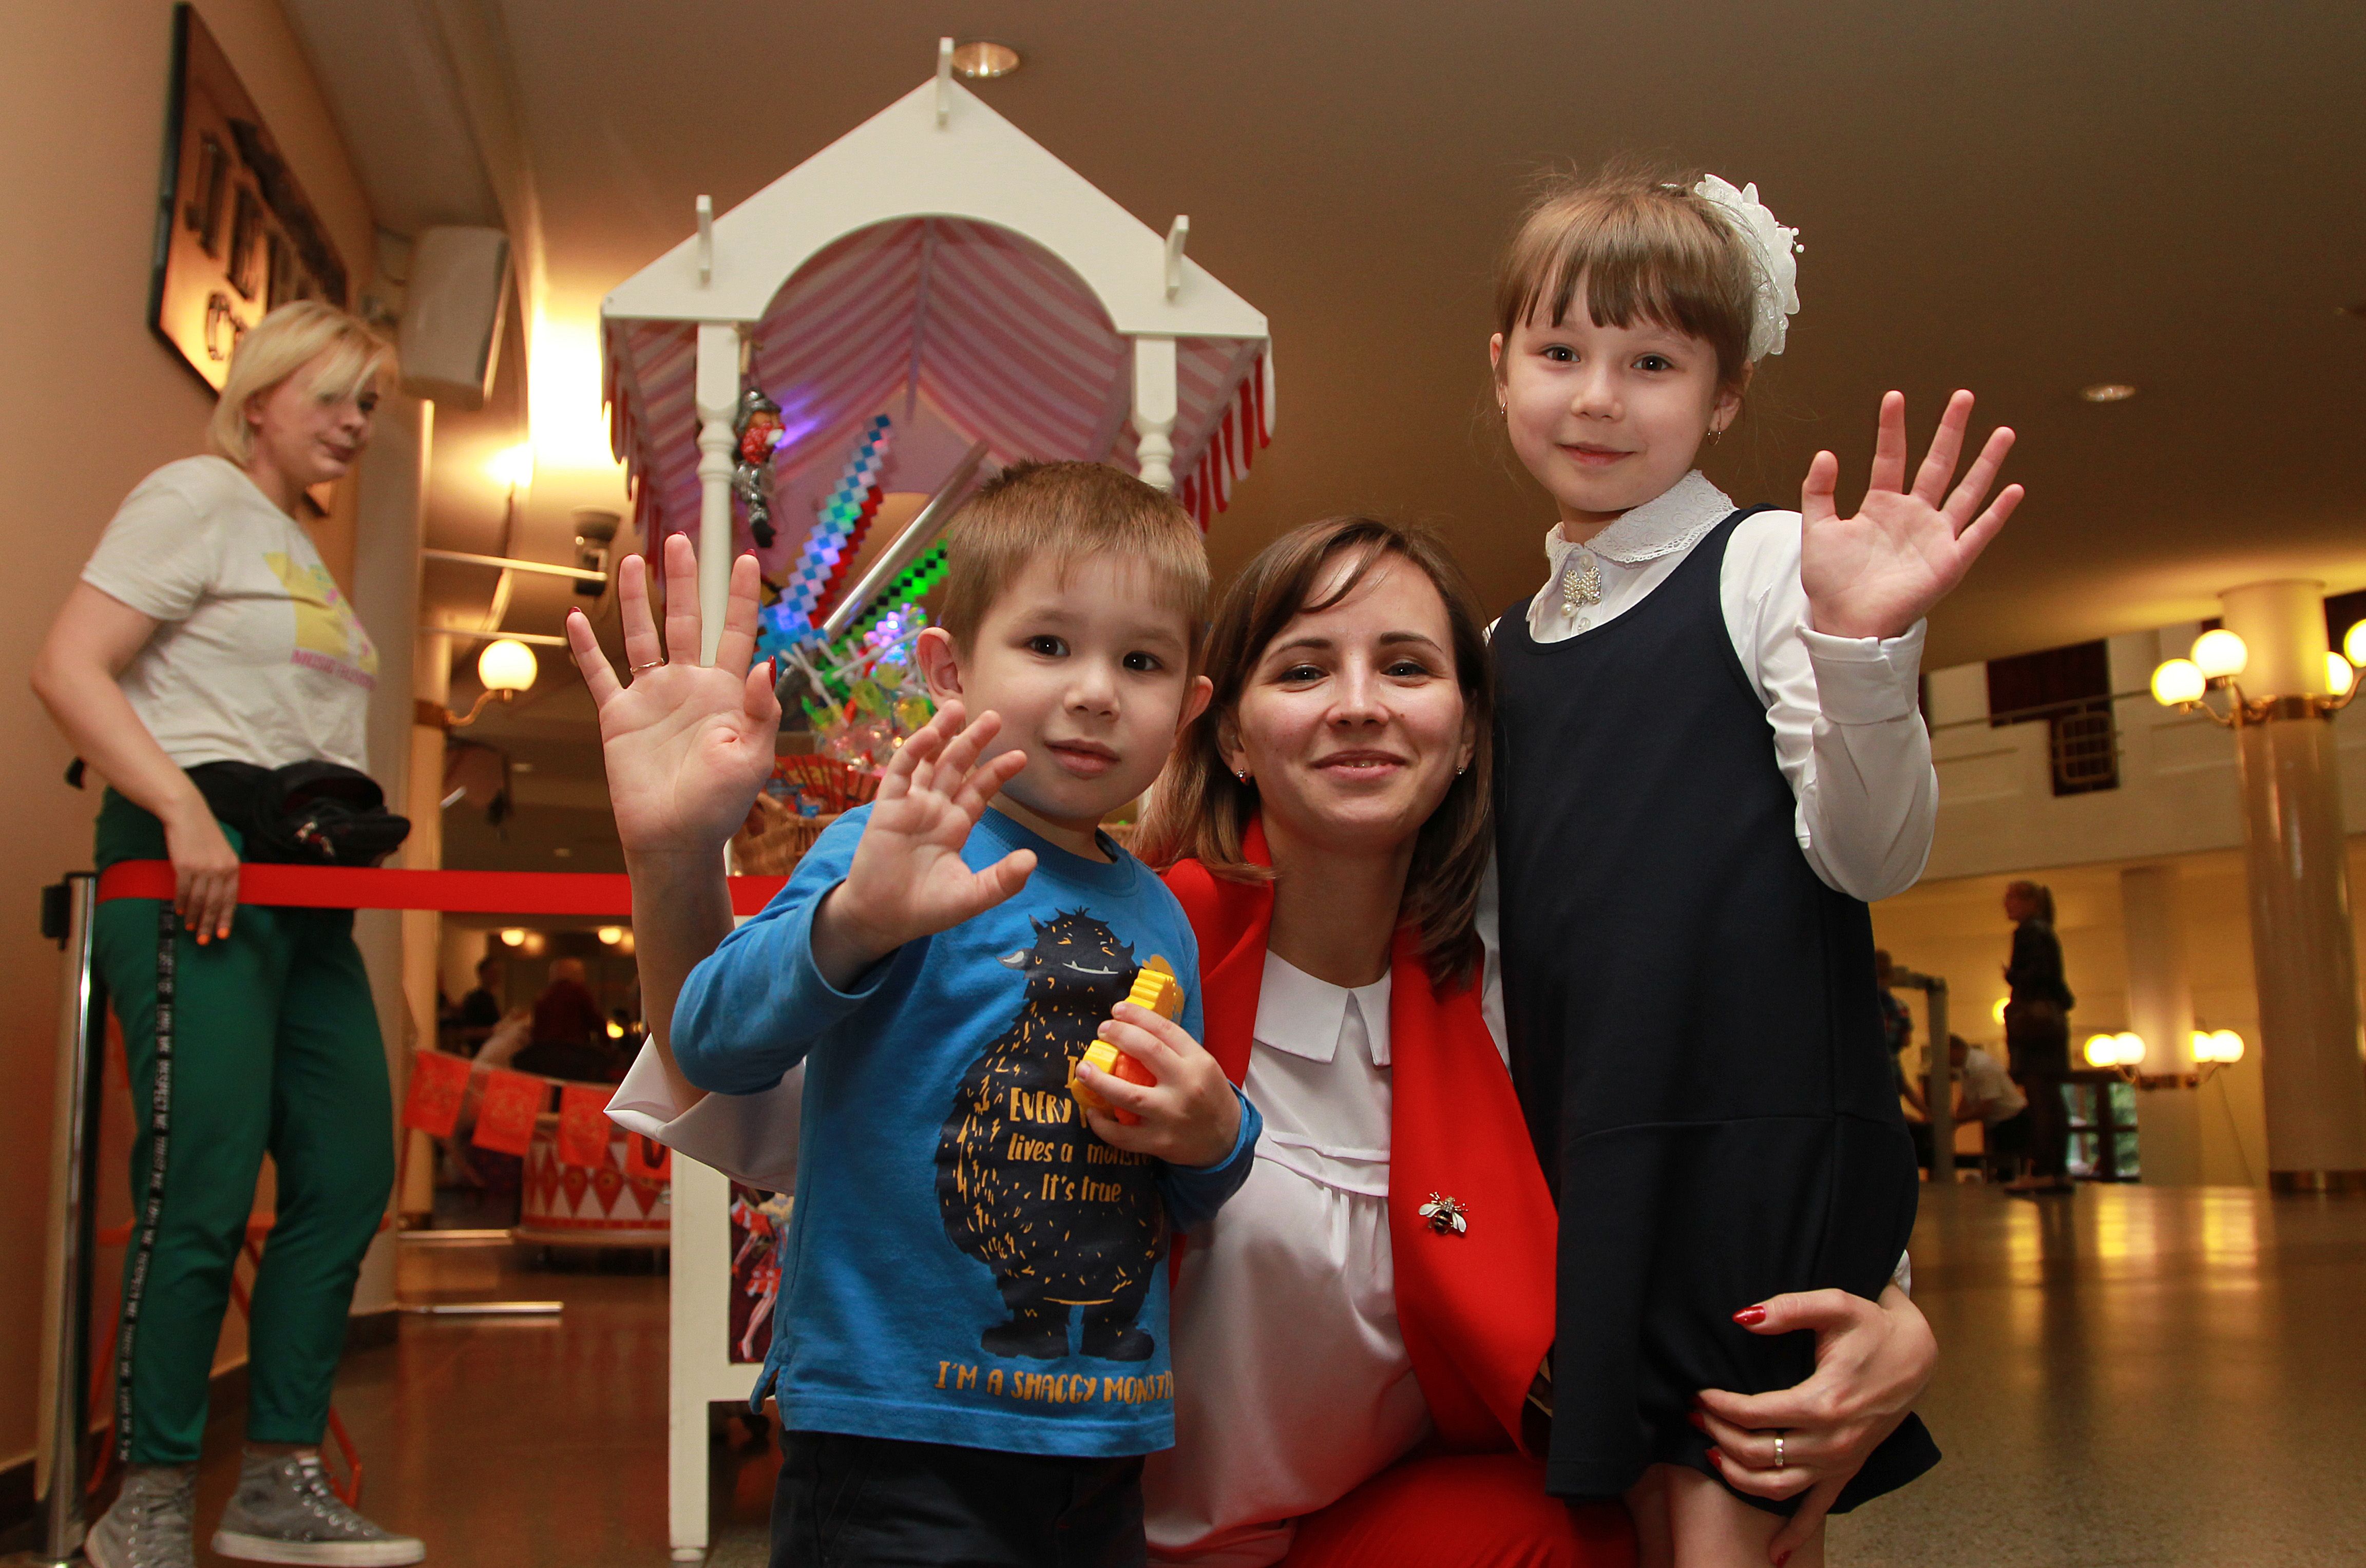 2 сентября 2019 года. Юля Никифорова (справа) с мамой Ольгой и братом Кириллом (1) пришла в цирк — смотреть на клоунов (2). Фото: Наталия Нечаева